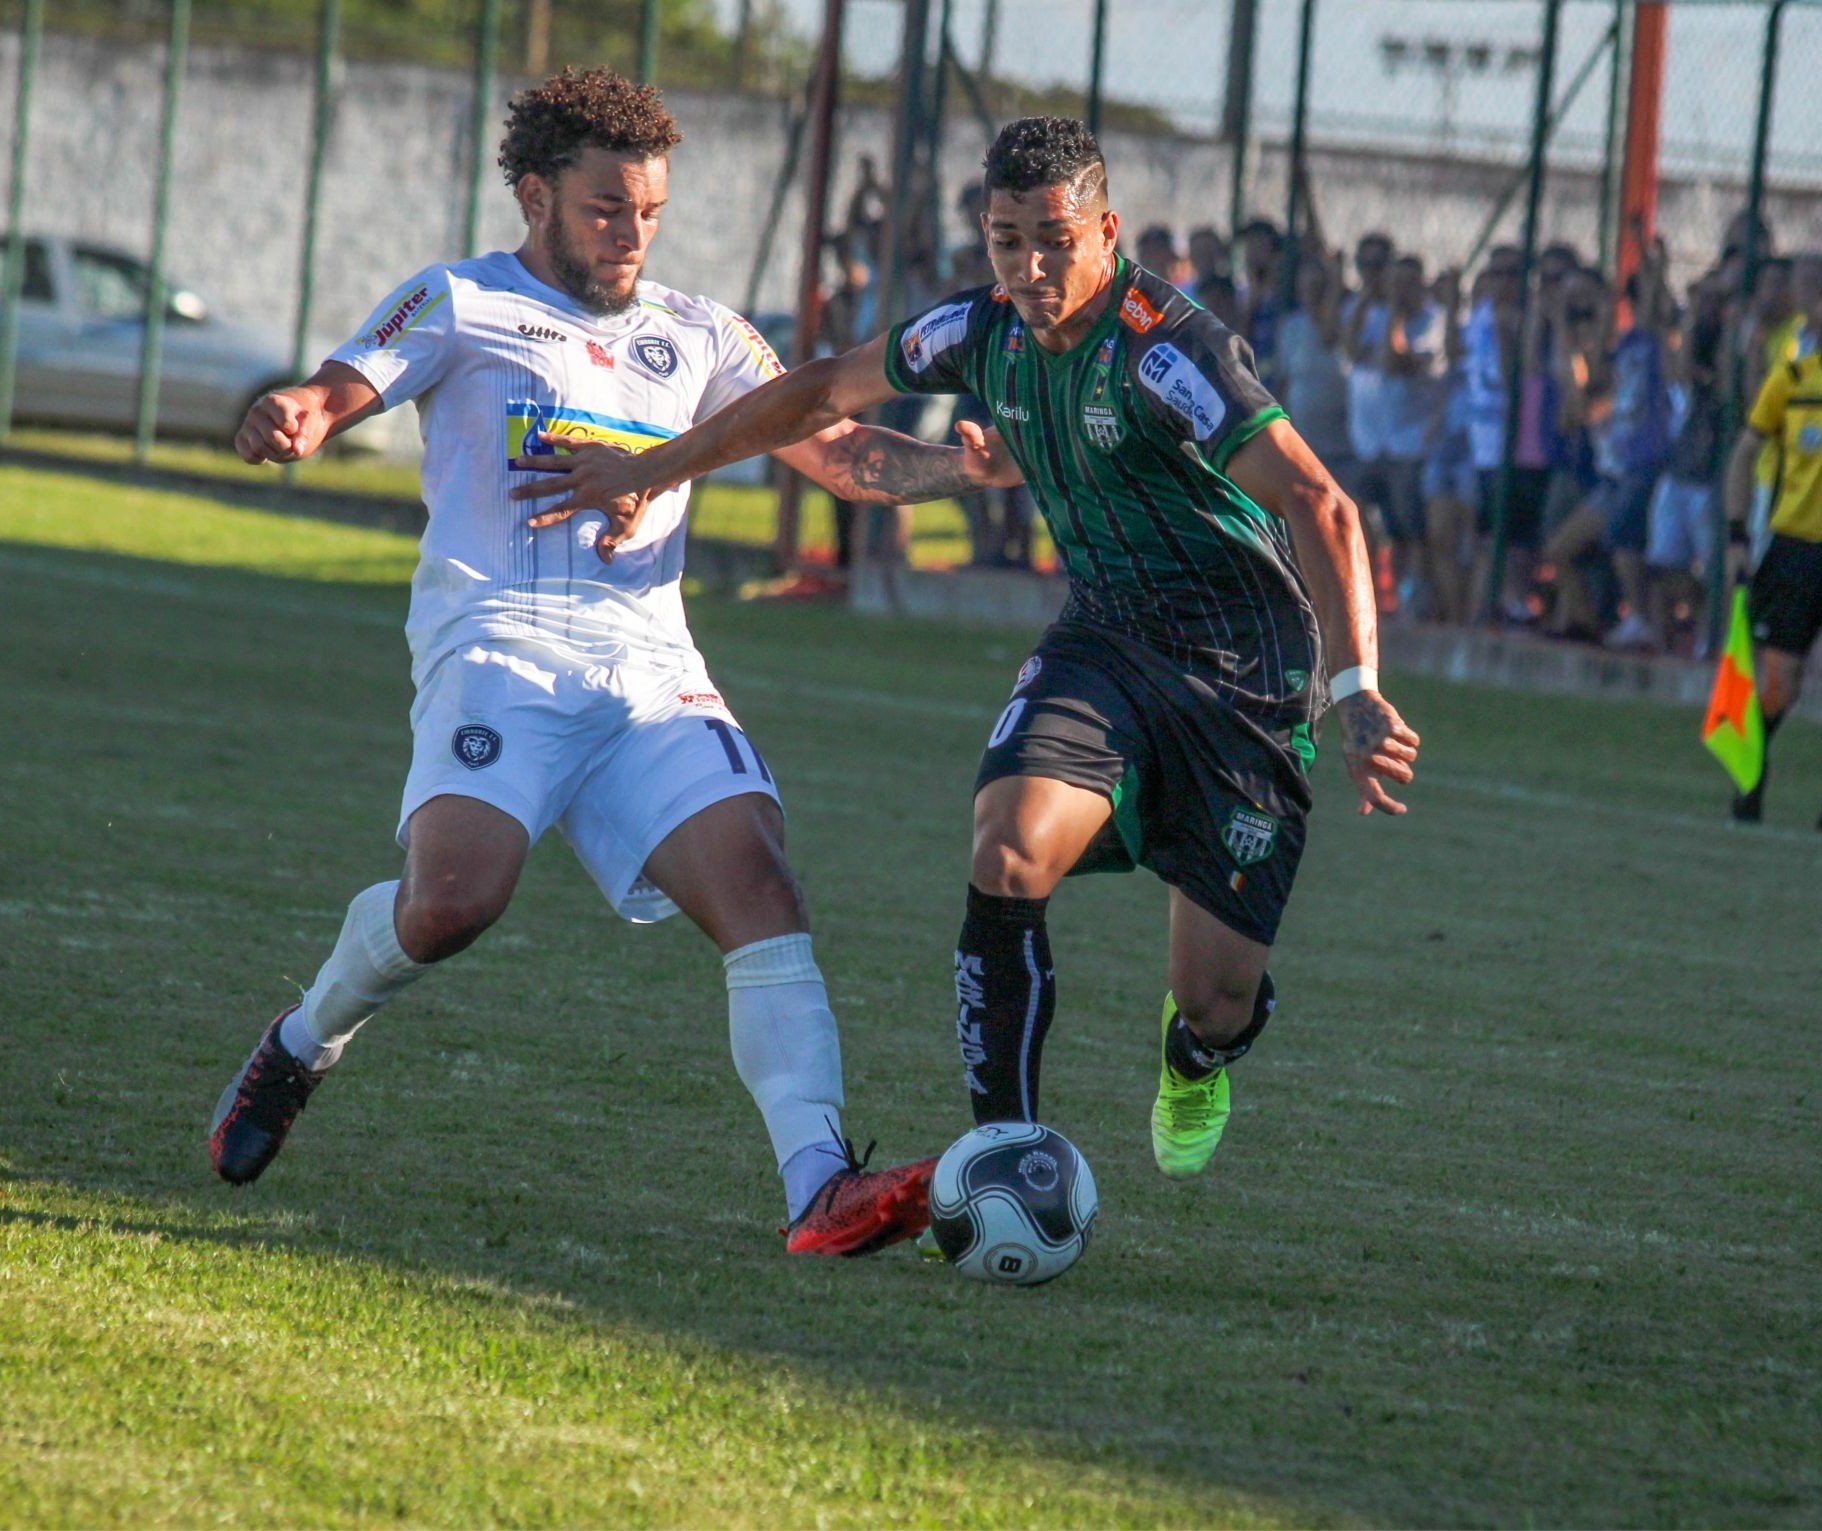 Vitória do Maringá FC diante do Madureira poderia ter sido com placar maior, não apenas 2 a 1